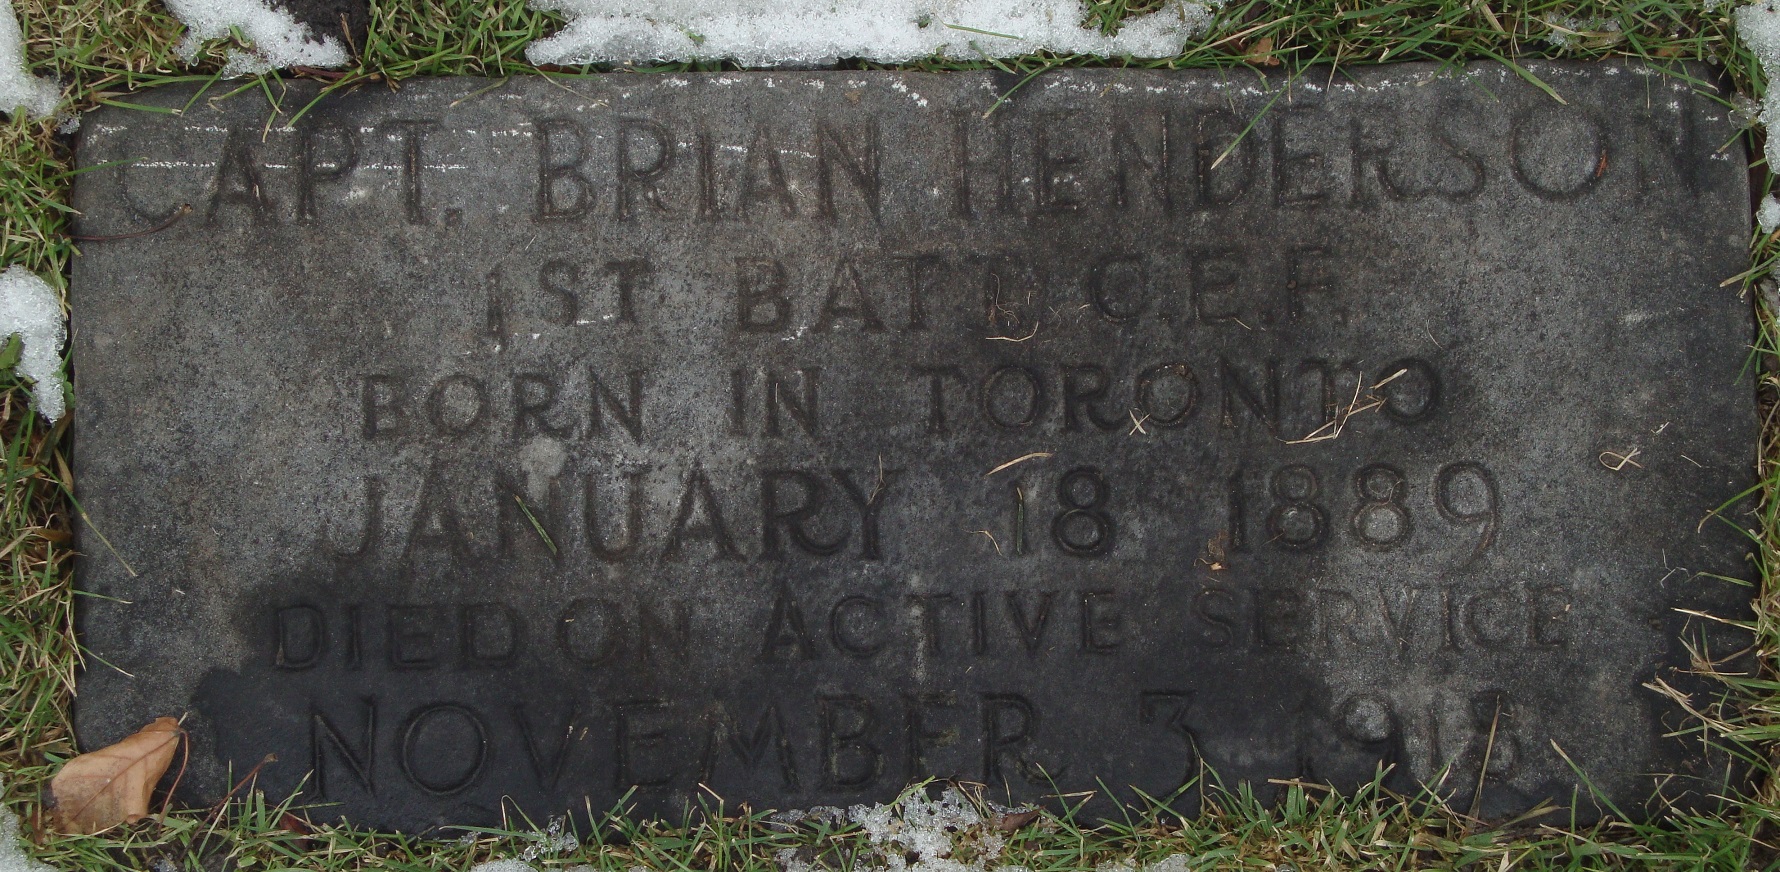 Captain Ernst Brian Henderson 1889-1918